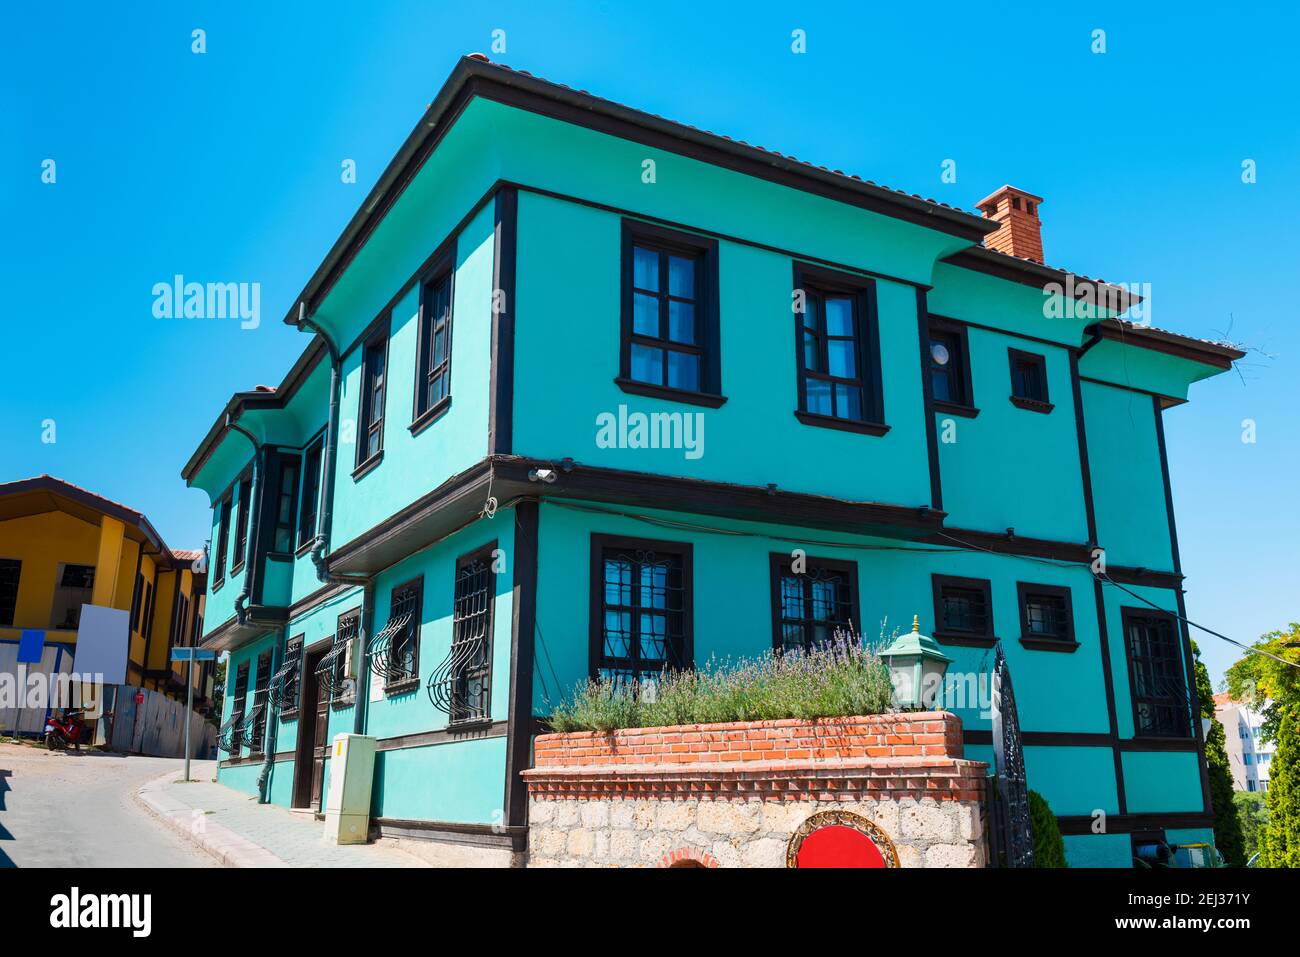 Bunte alte Häuser in Odunpazari. Schöner Blick auf die Straße in Odunpazari mit traditionellen historischen Häusern. Eskisehir, Türkei. Stockfoto